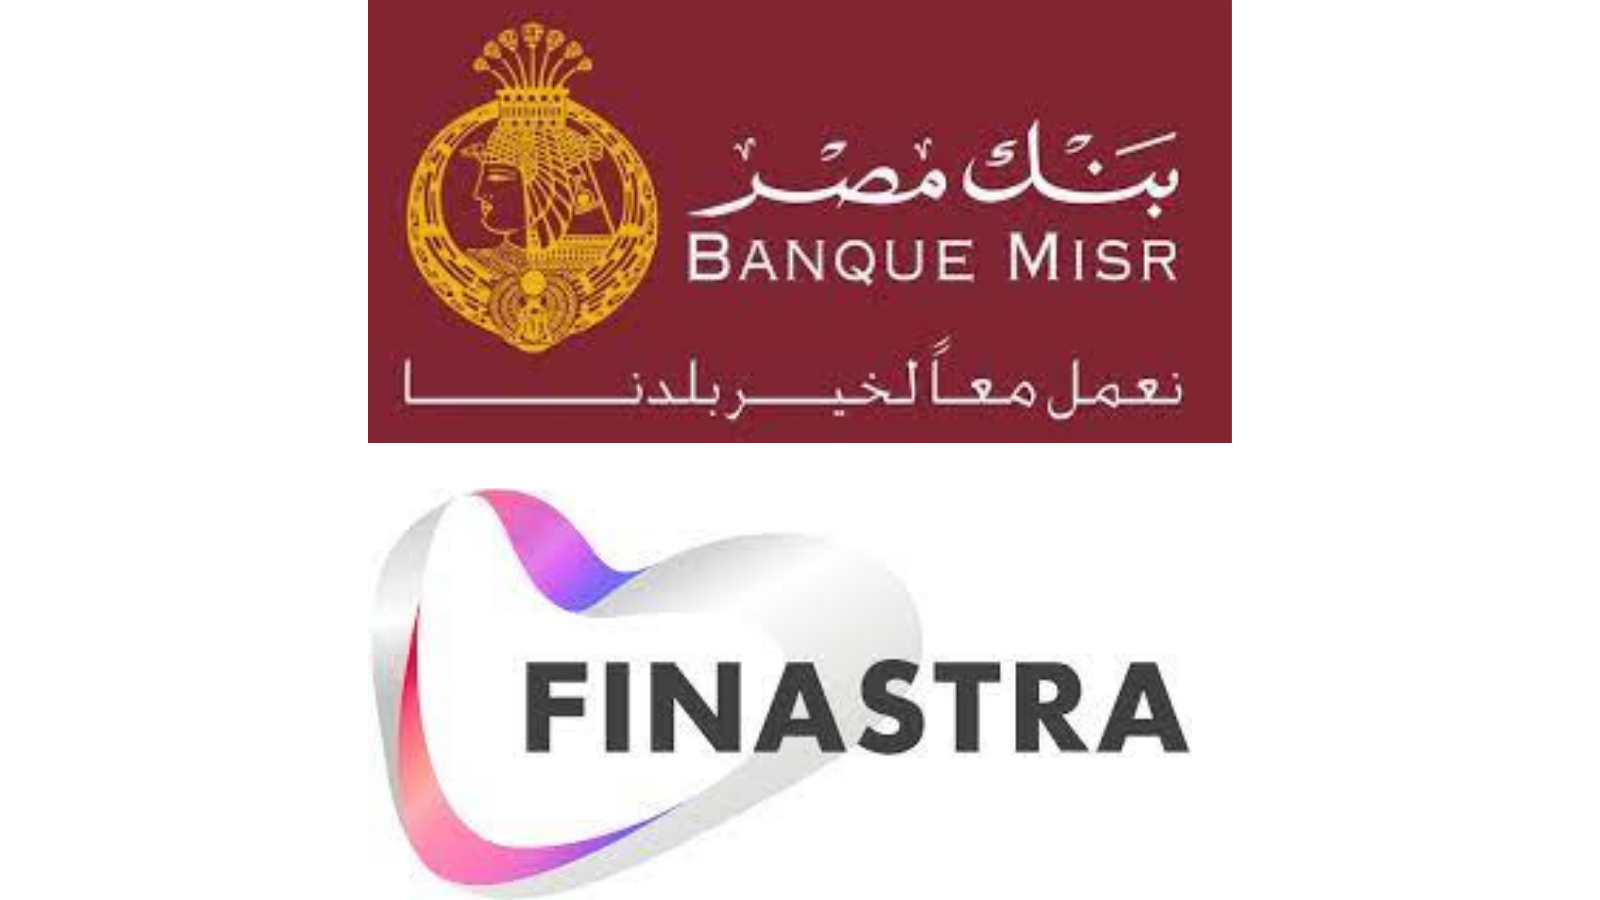 Banque Misr, Finastra Logo's